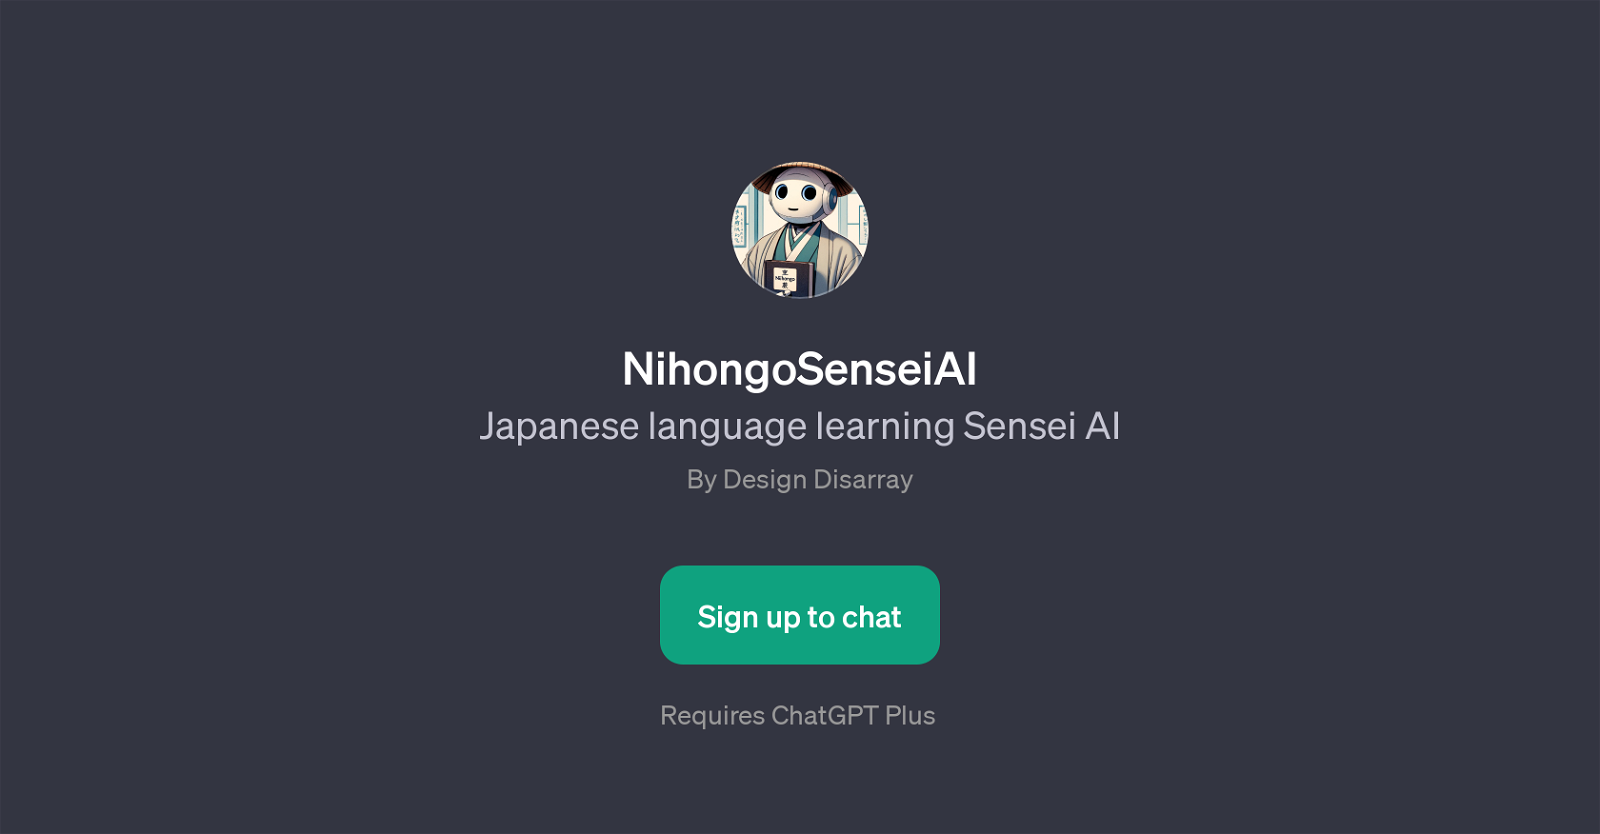 NihongoSenseiAI website